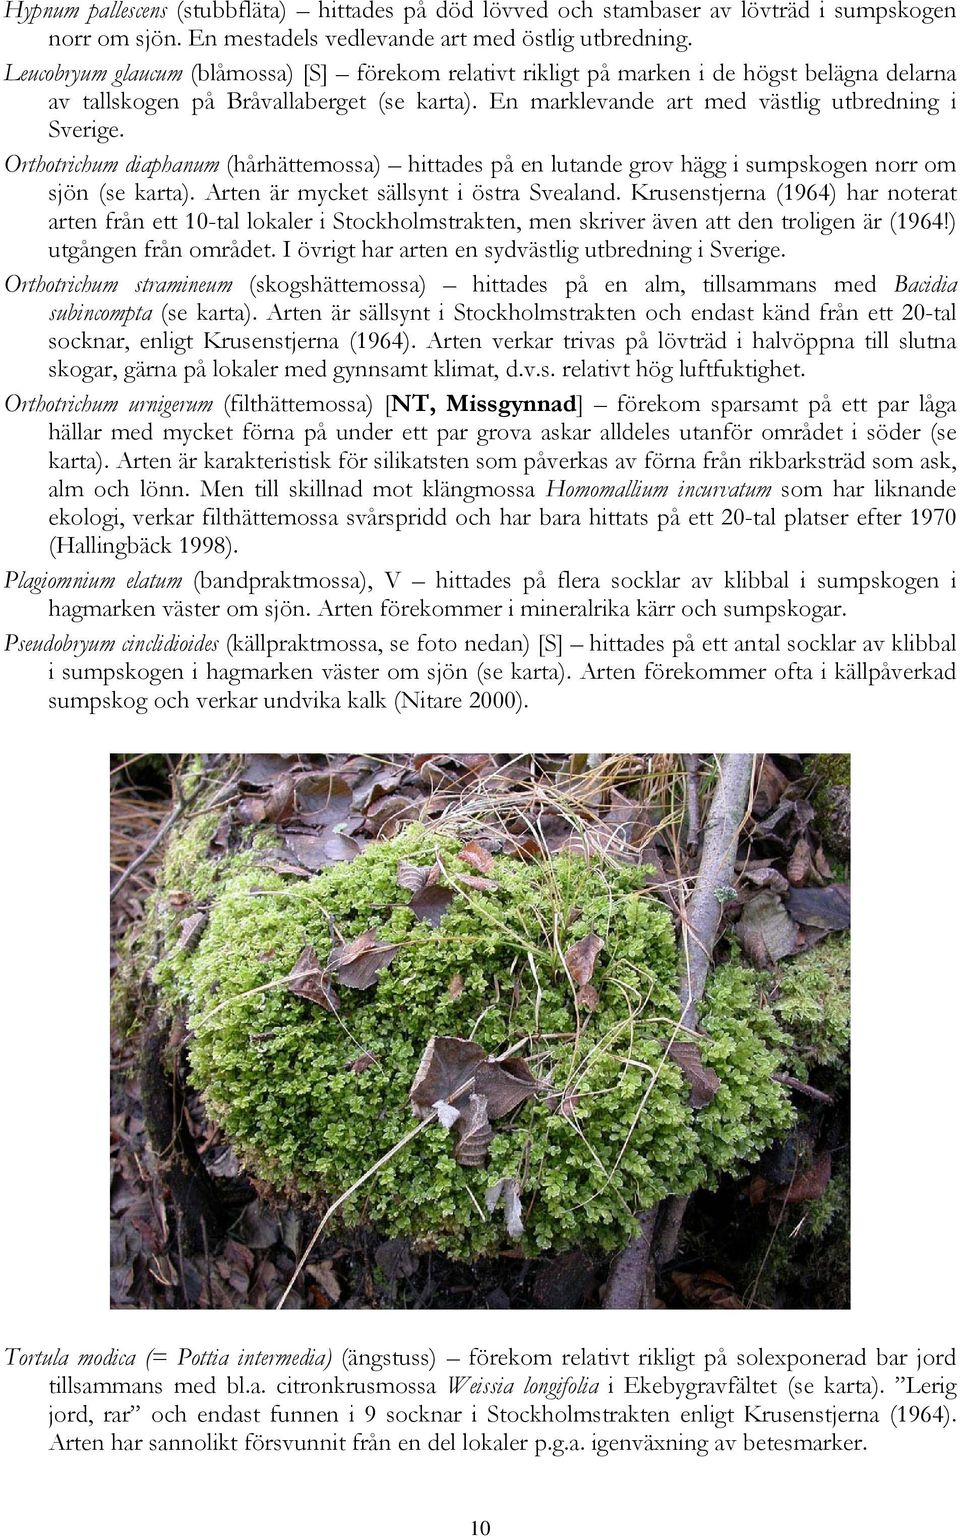 Orthotrichum diaphanum (hårhättemossa) hittades på en lutande grov hägg i sumpskogen norr om sjön (se karta). Arten är mycket sällsynt i östra Svealand.